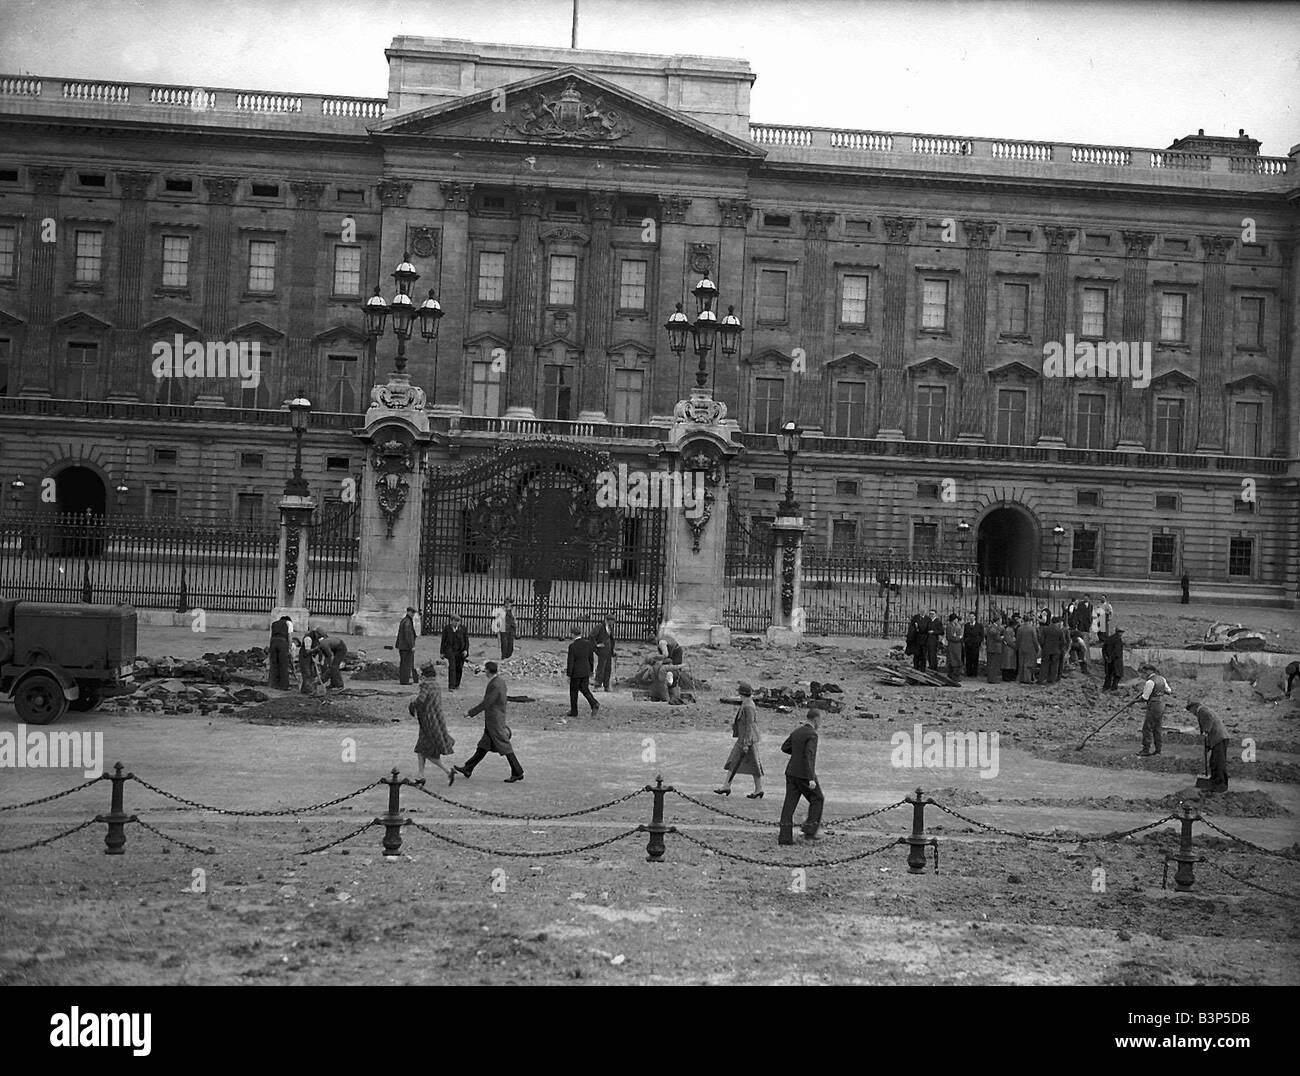 La Chapelle Royale du Palais de Buckingham a bombardé d'un raid ...